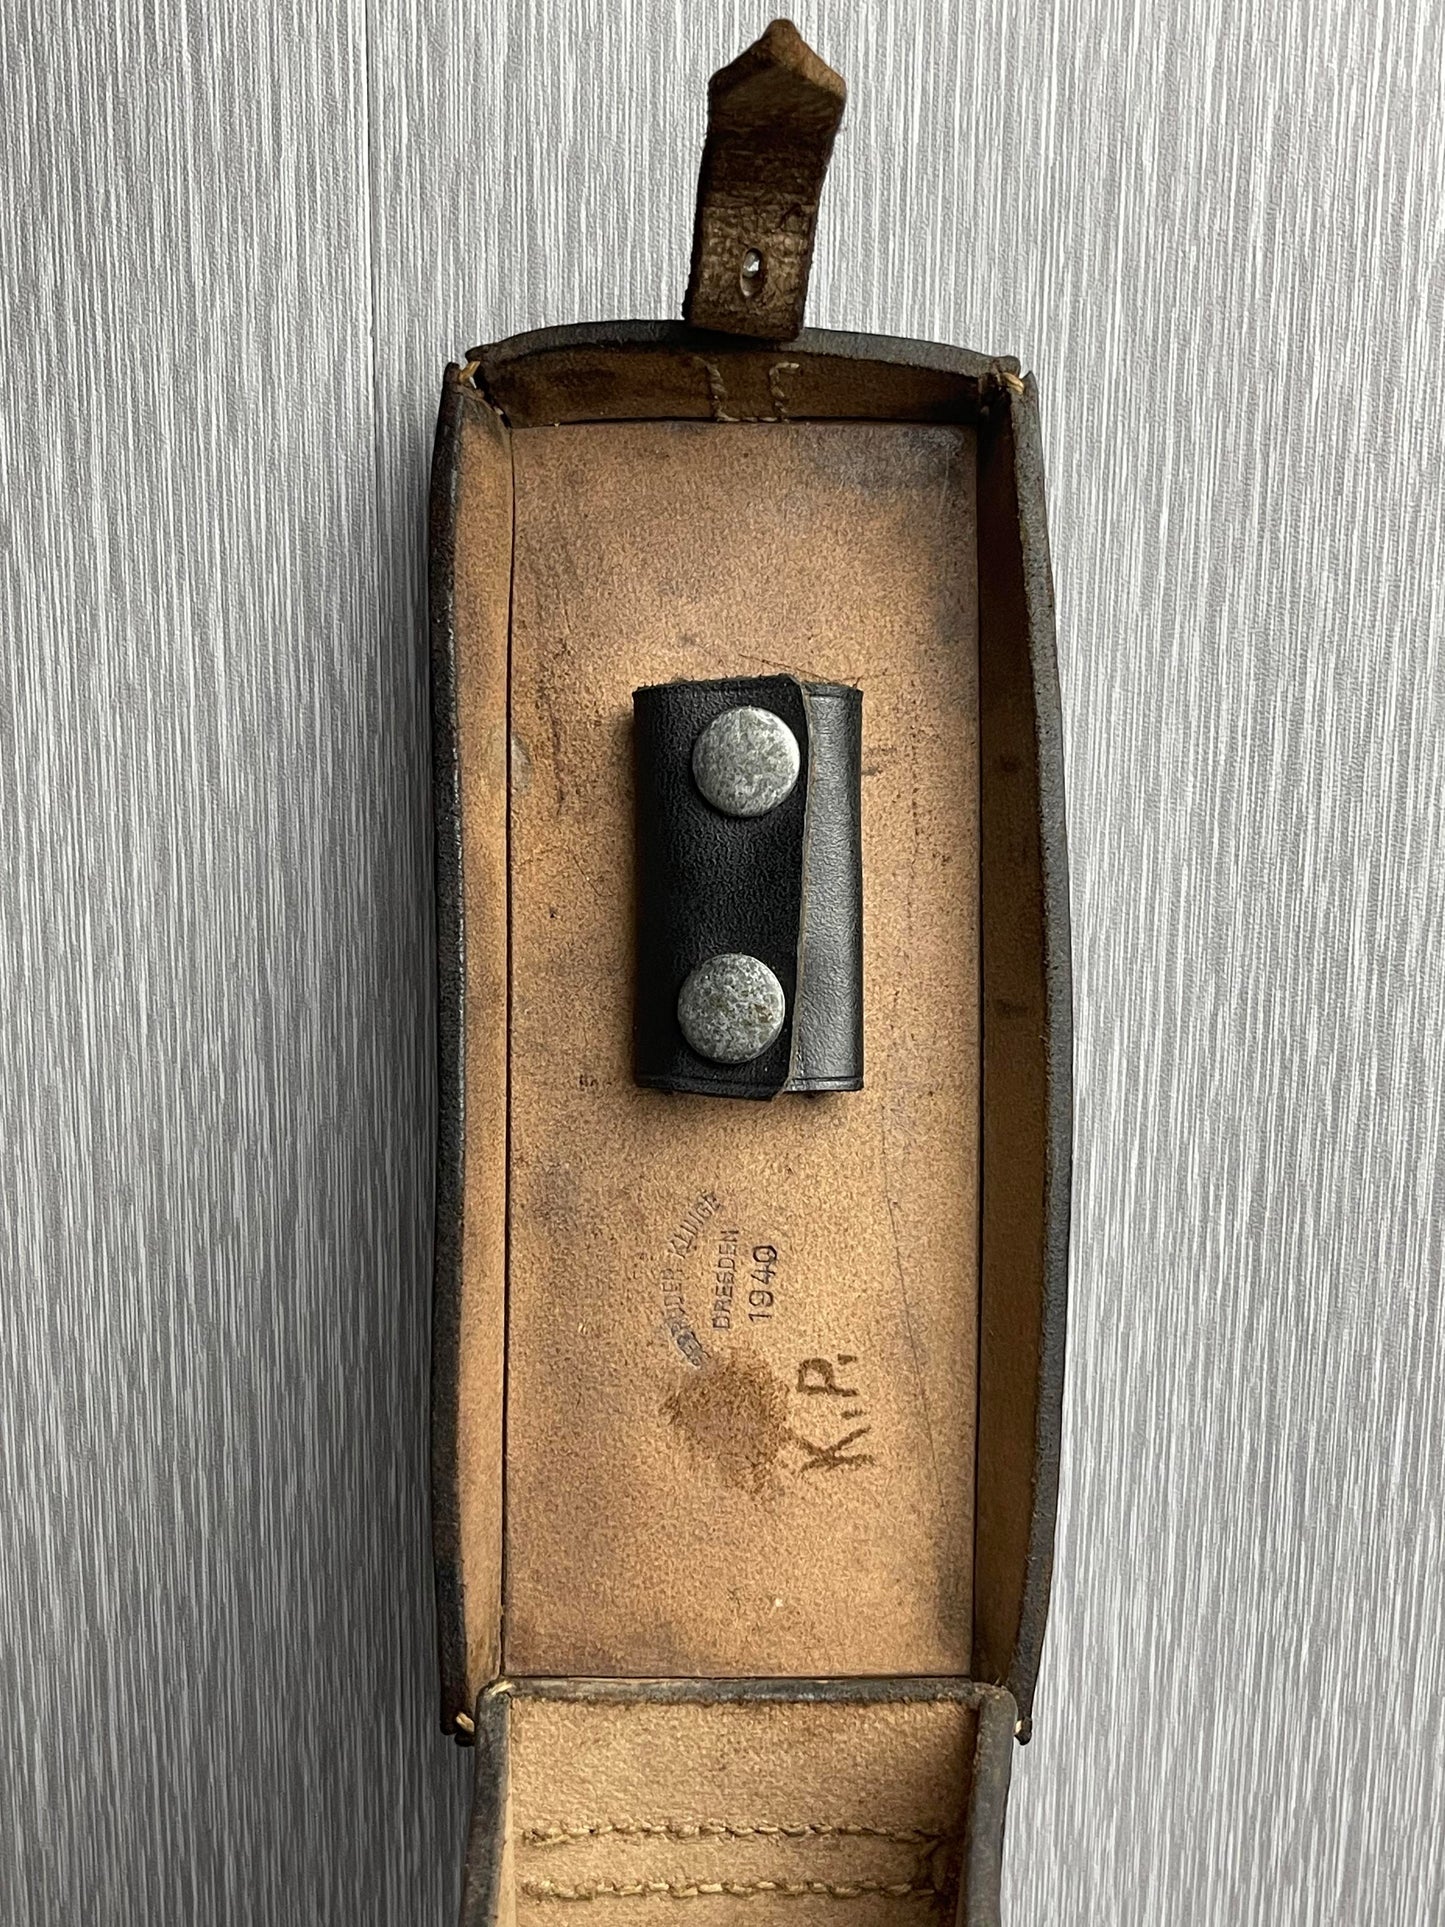 GERMAN WW2 FIELD PHONE BATTERY/COMMUNICATIONS LEATHER BELT POUCH GEBRUDER KLINGE 1940